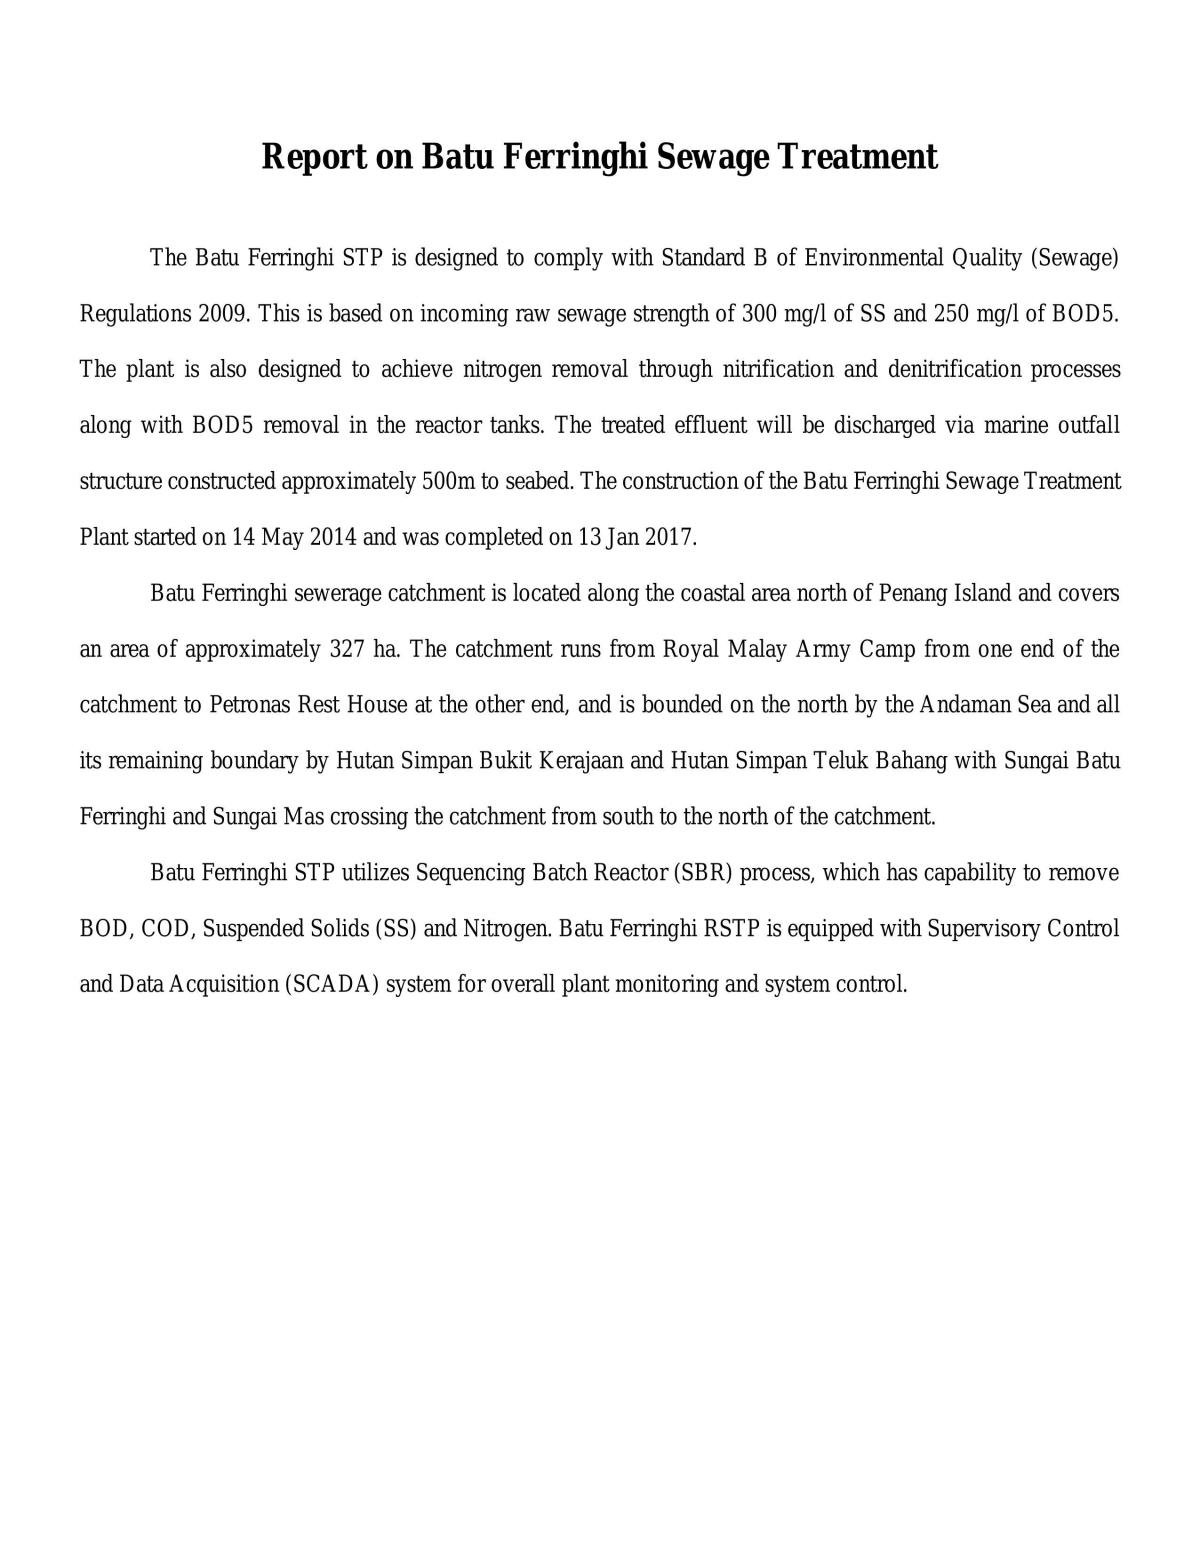 Report on Batu Ferringhi Sewage Management - Page 1